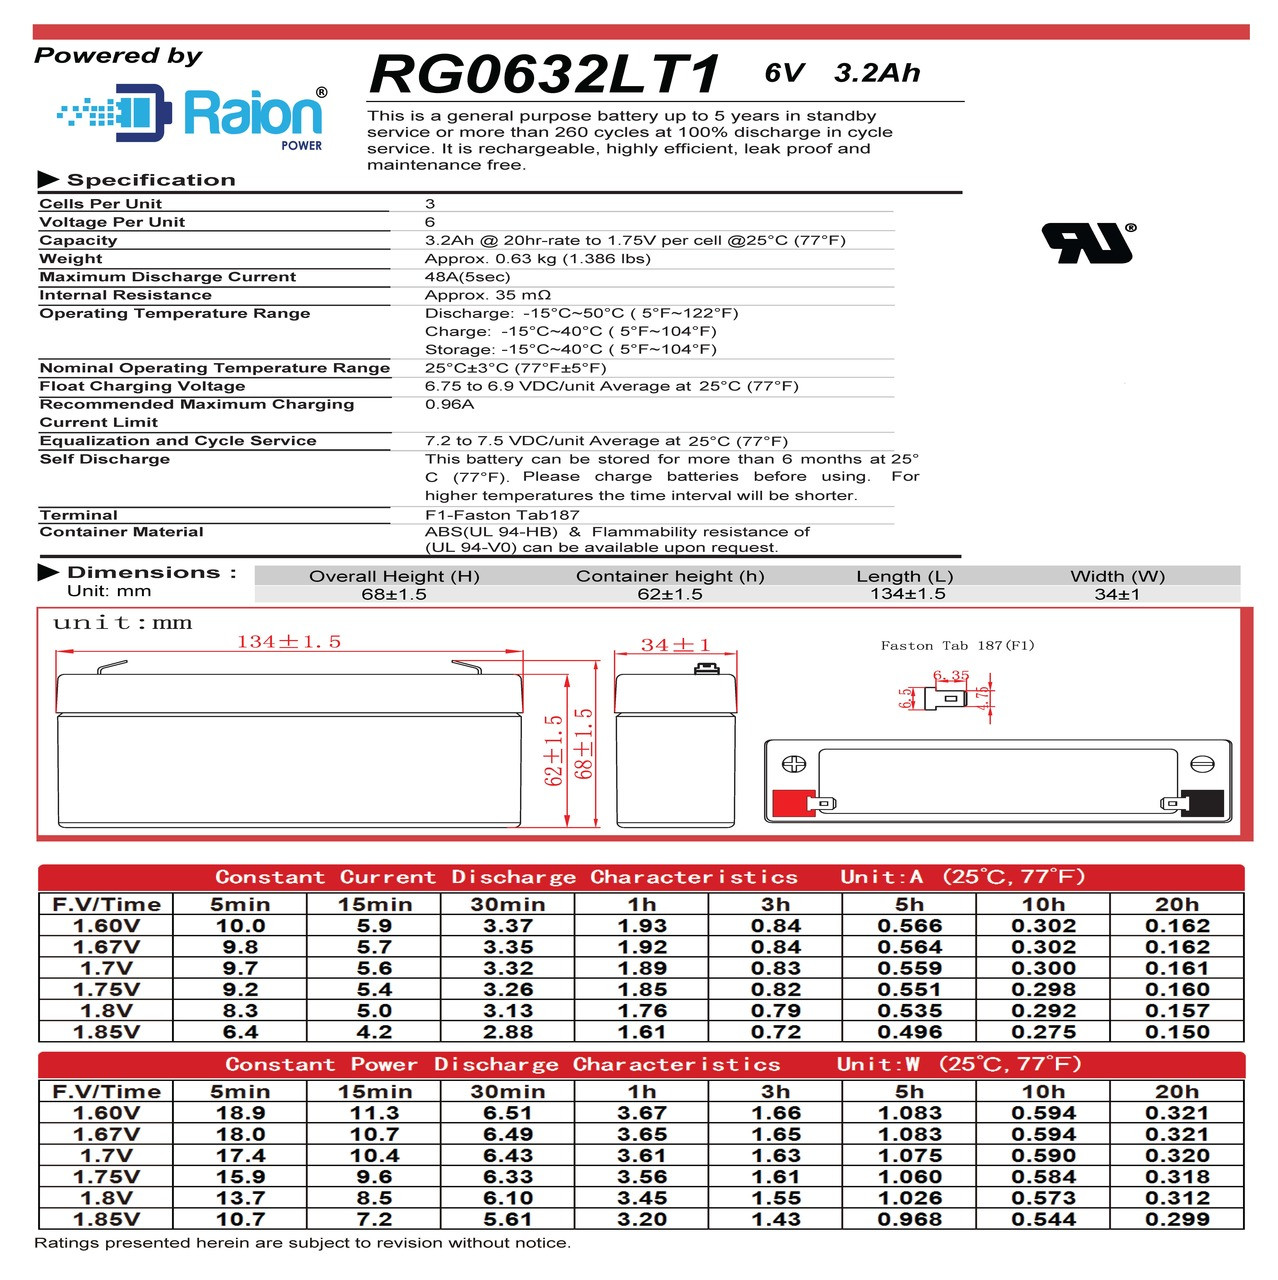 Raion Power RG0632LT1 6V 3.2Ah Battery Data Sheet for R&D 5371